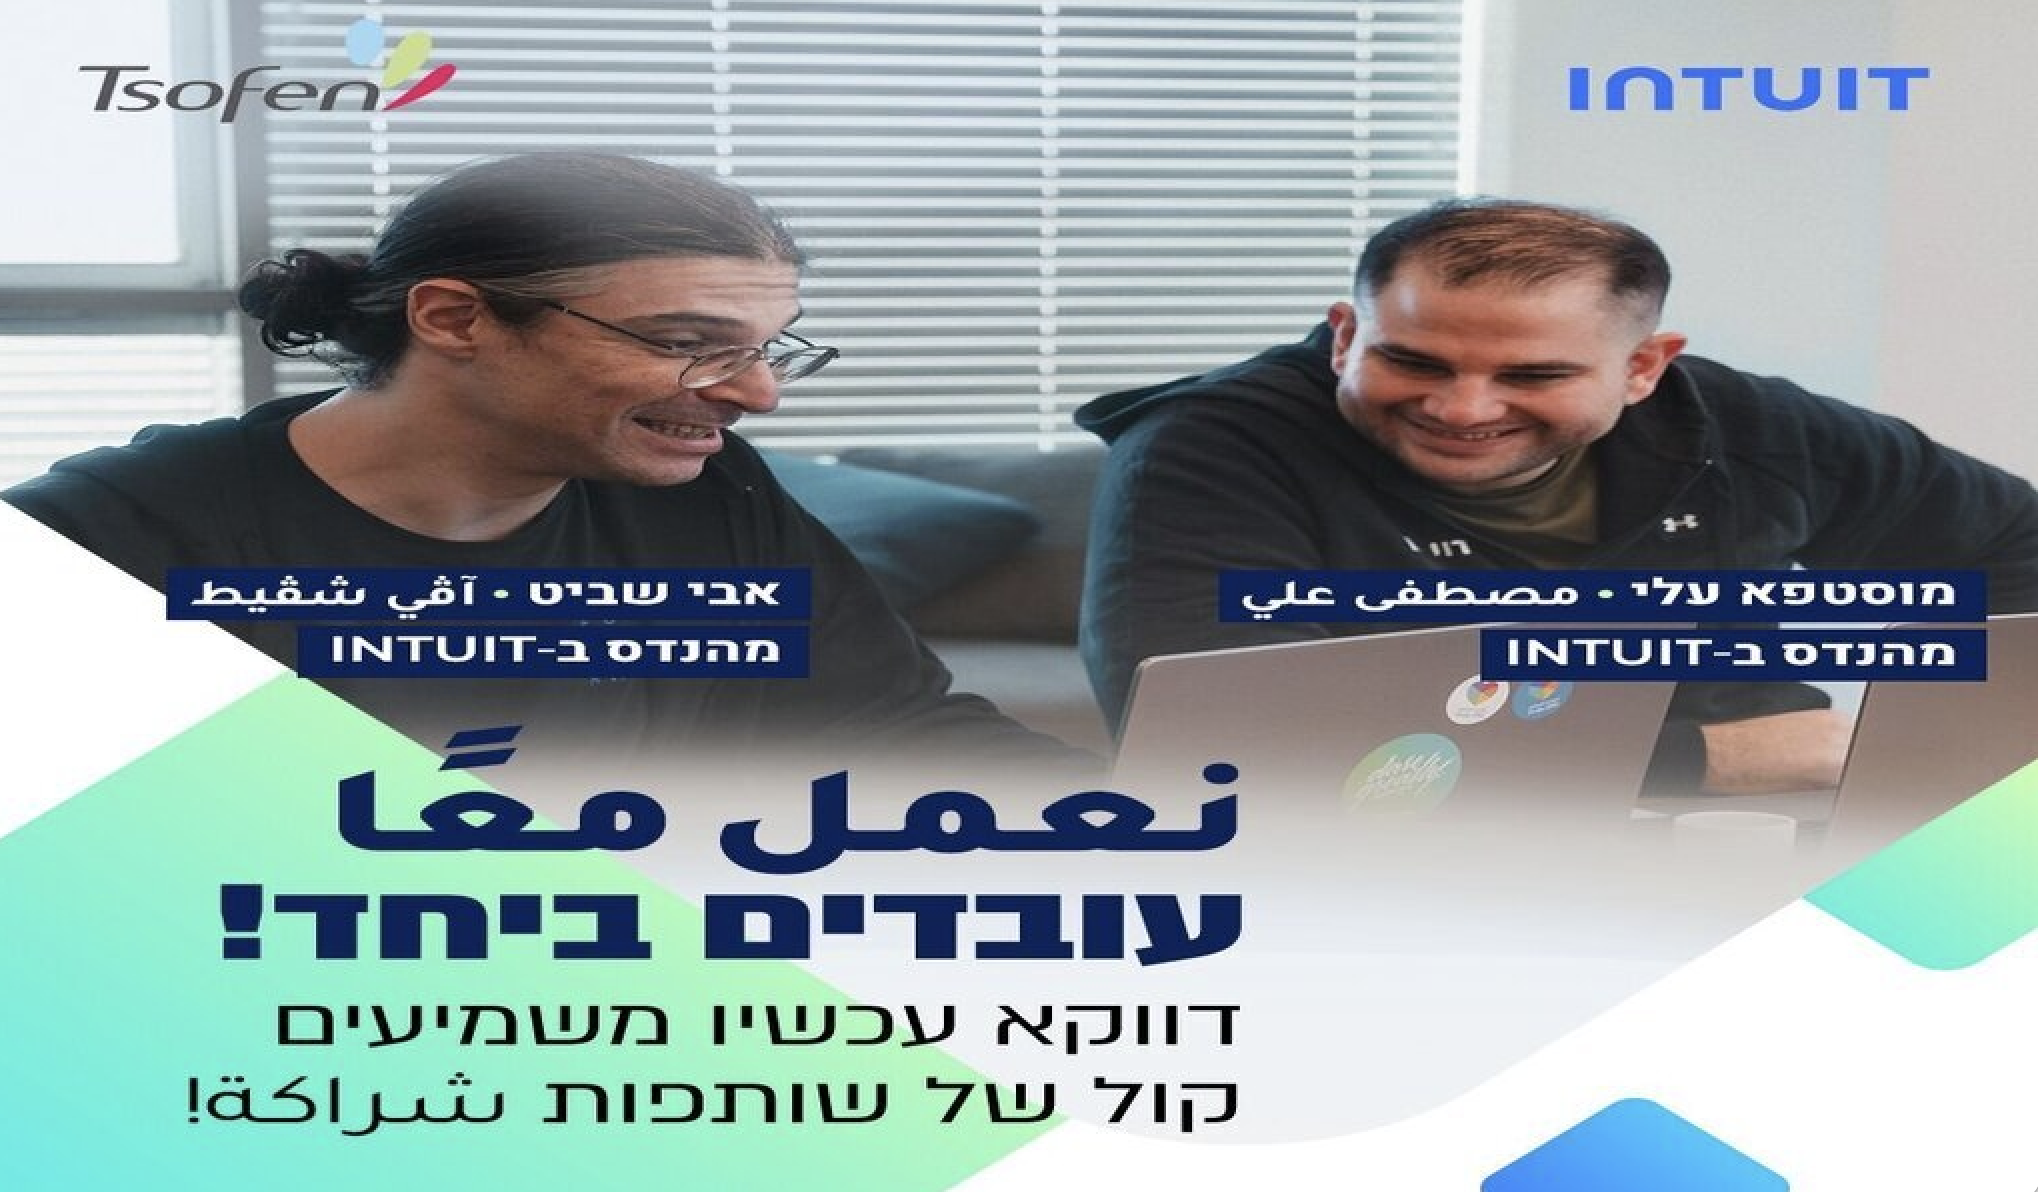 حملة جديدة تعزز الوحدة العربية اليهودية في قطاع التكنولوجيا الفائقة في إسرائيل